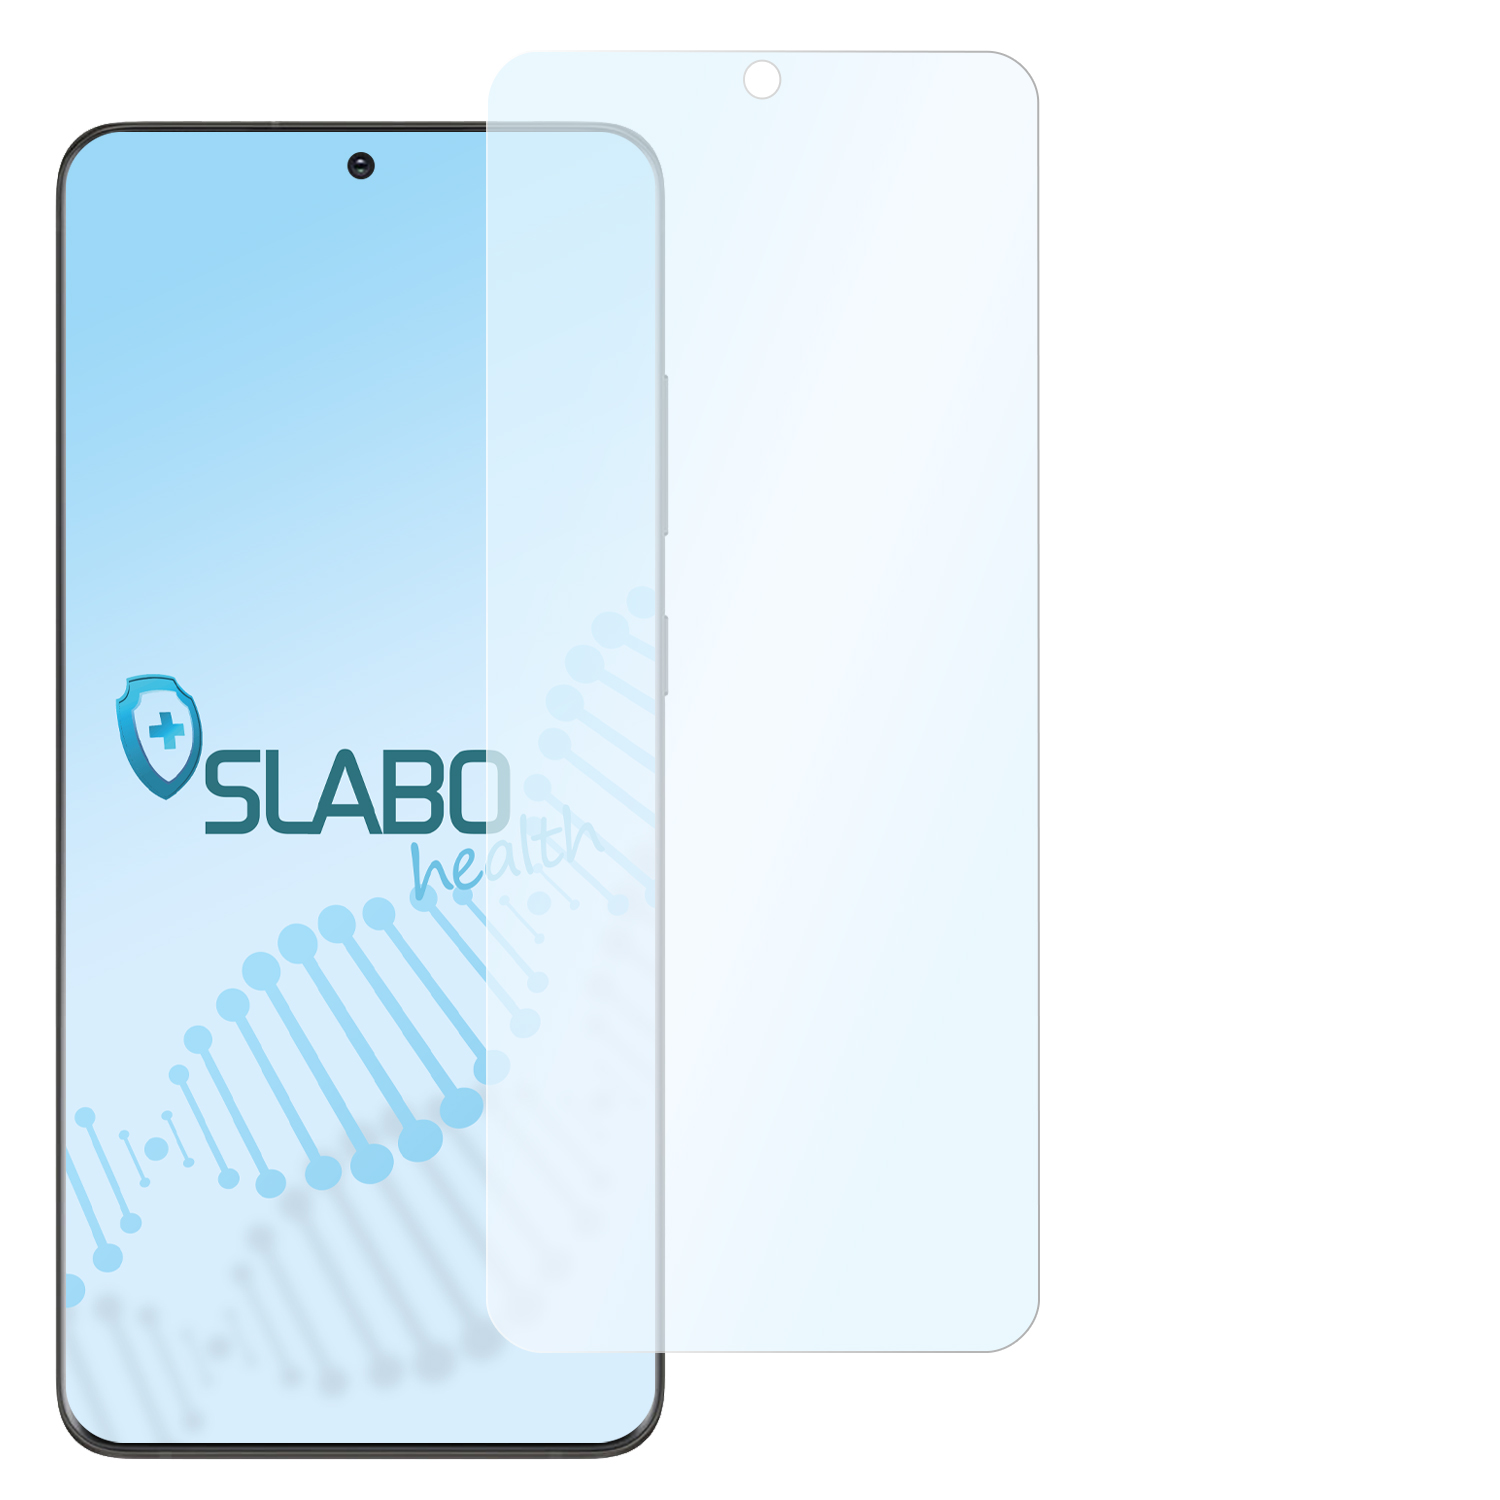 flexible SLABO 5G) antibakterielle Galaxy Hybridglasfolie Ultra Displayschutz(für S20 Samsung